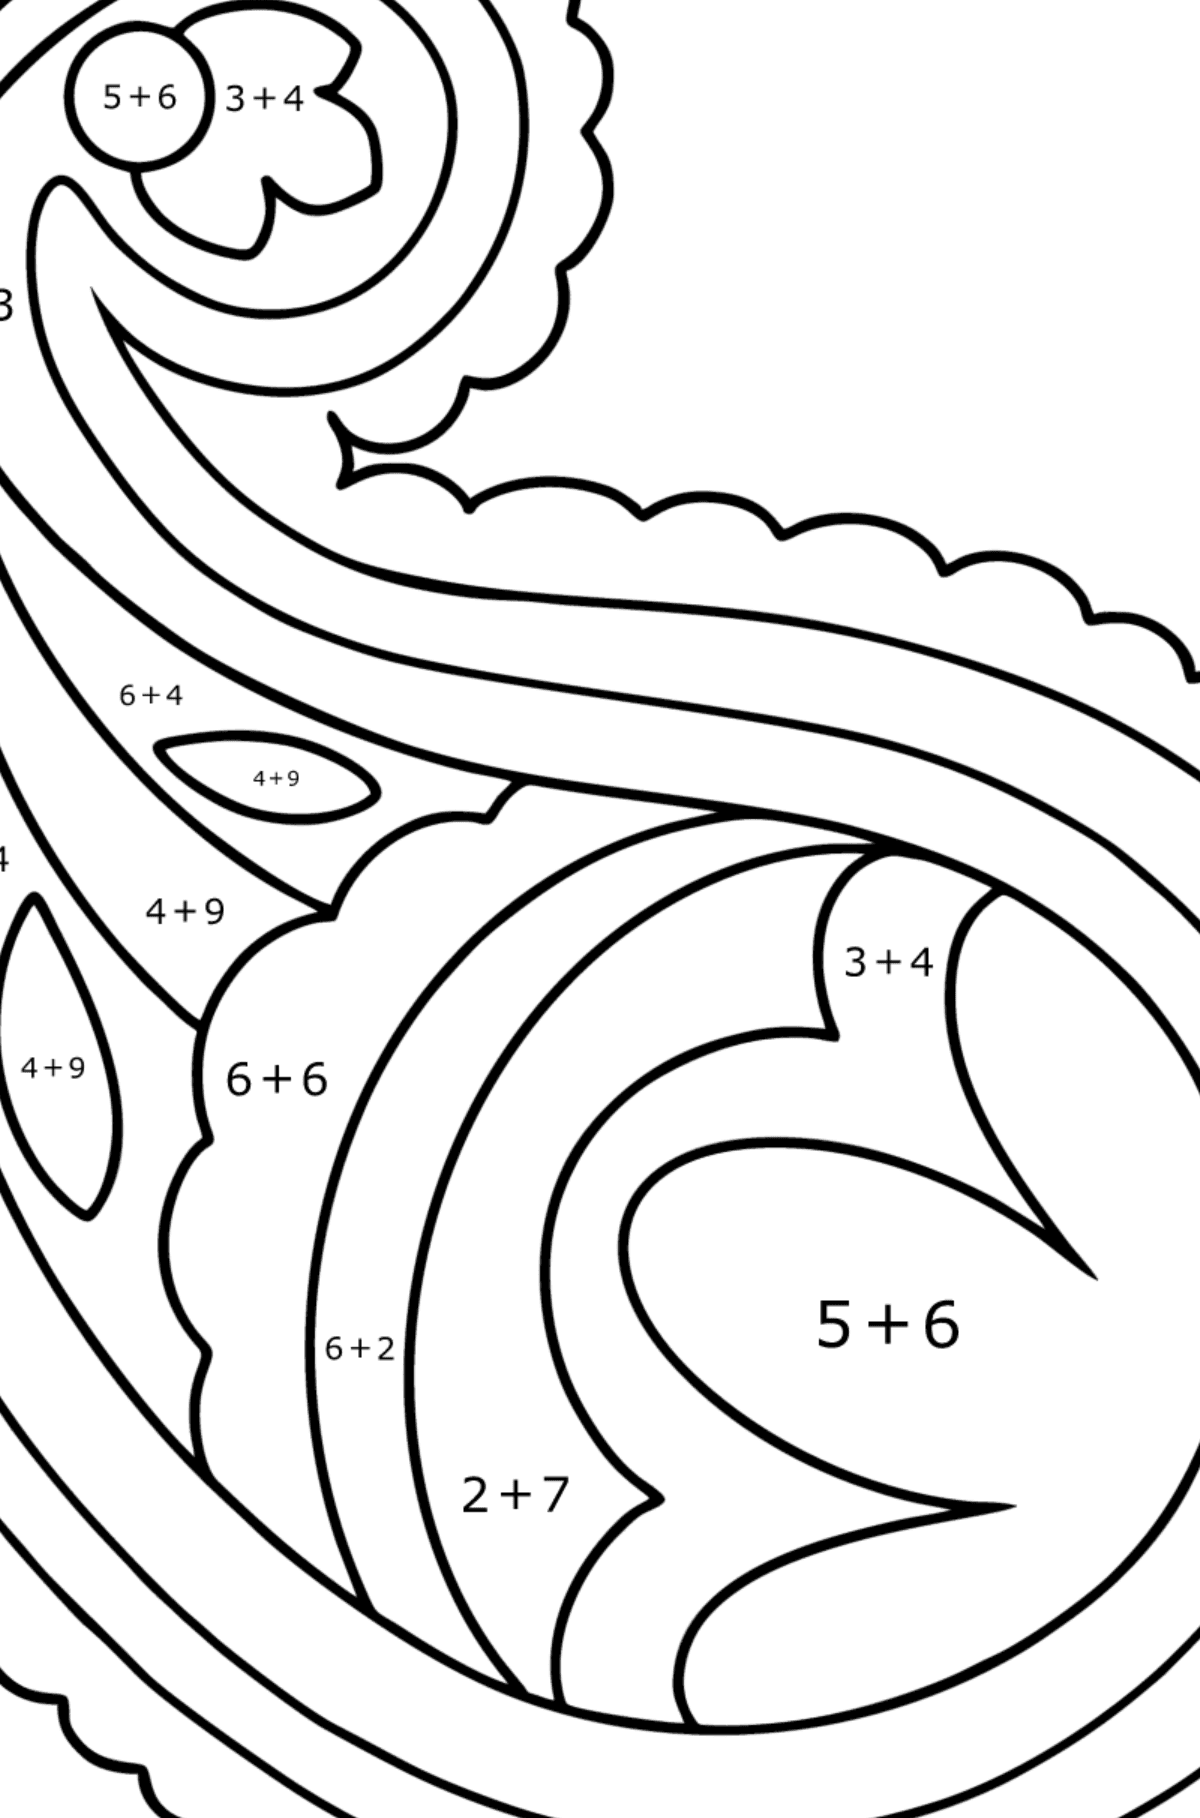 Ausmalbild Paisley - 16 Elemente - Mathe Ausmalbilder - Addition für Kinder